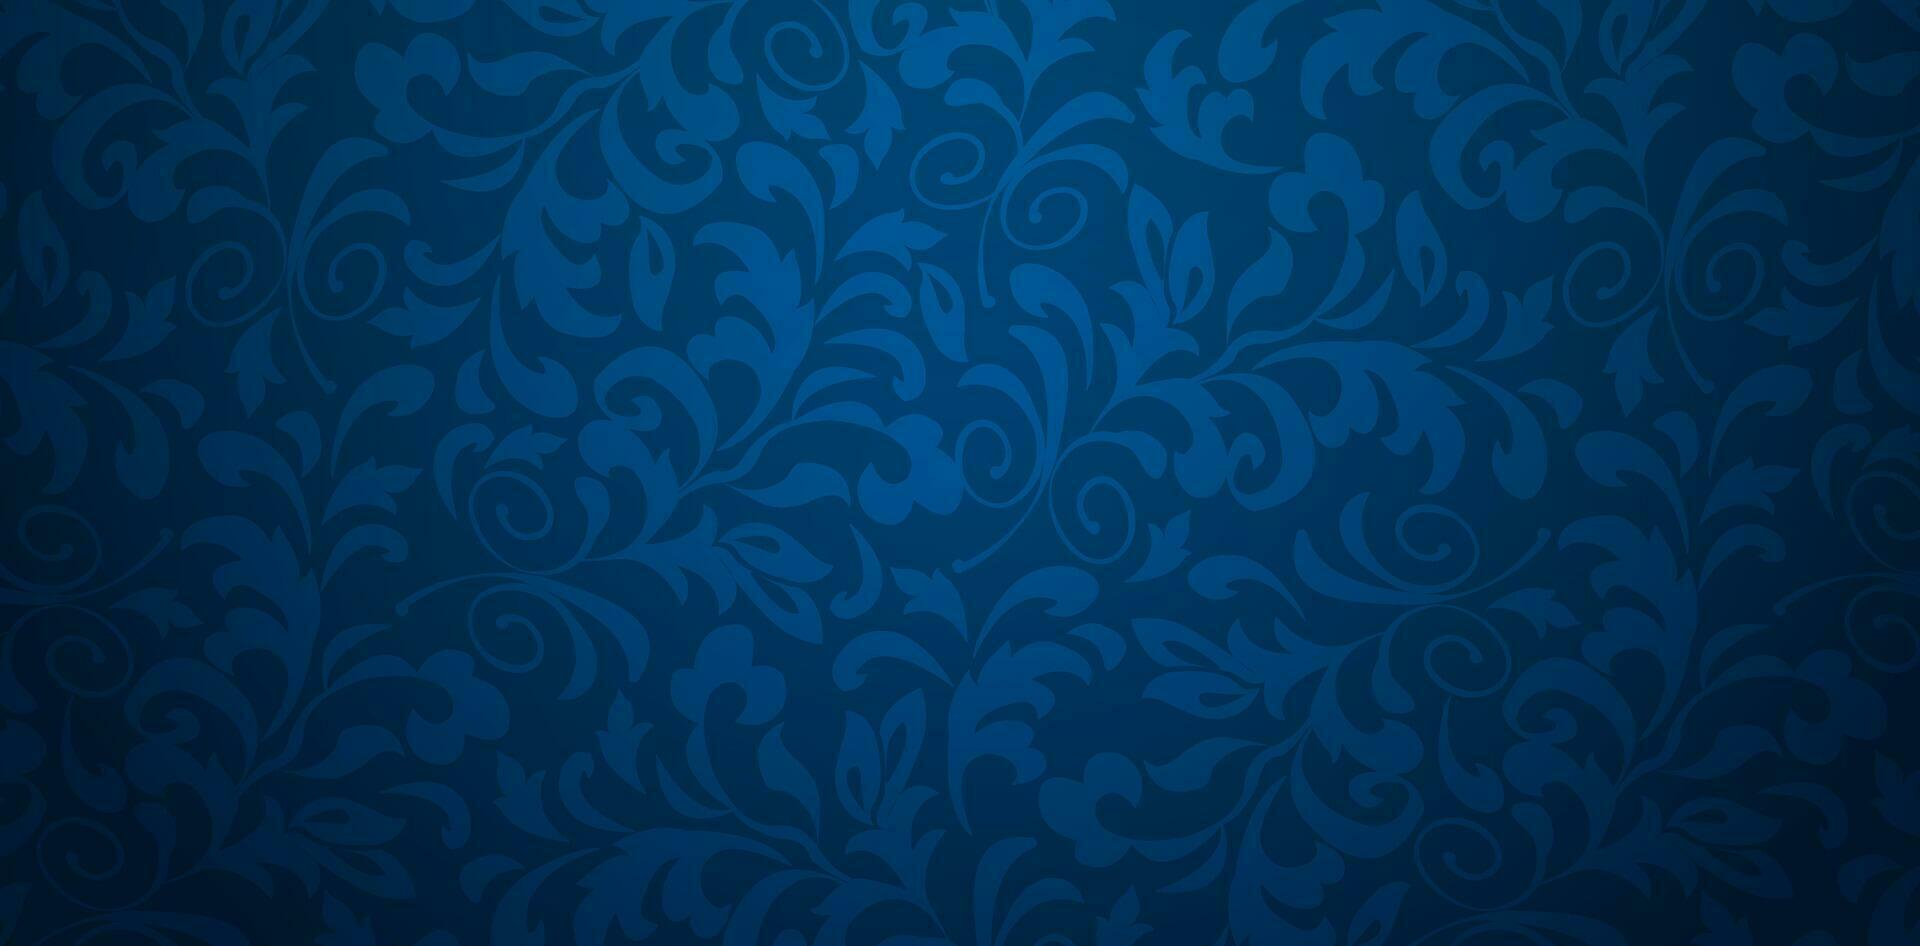 Vektor Illustration dunkel Blau Hintergrund mit Blumen- Ornament nahtlos Damast Hintergrund zum Präsentationen Marketing, Decks, Anzeigen, Bücher Abdeckungen, Digital Schnittstellen, drucken Design Vorlagen Materialien